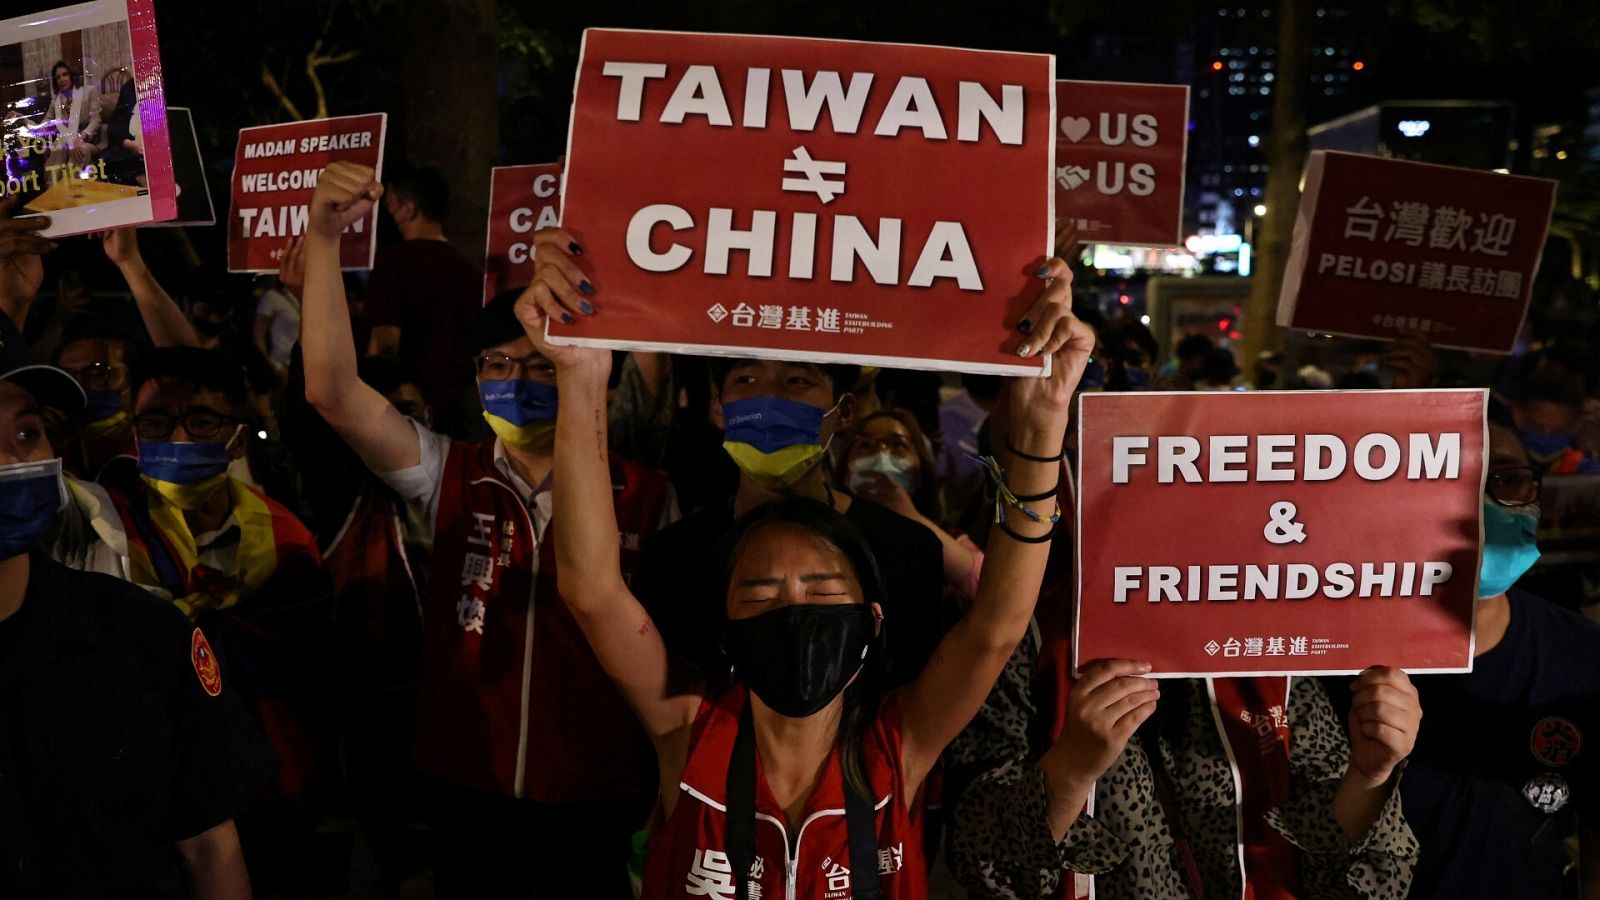  Manifestantes sostienen carteles en apoyo a la visita de la presidenta de la Cámara de Representantes de EE.UU. a Taiwán